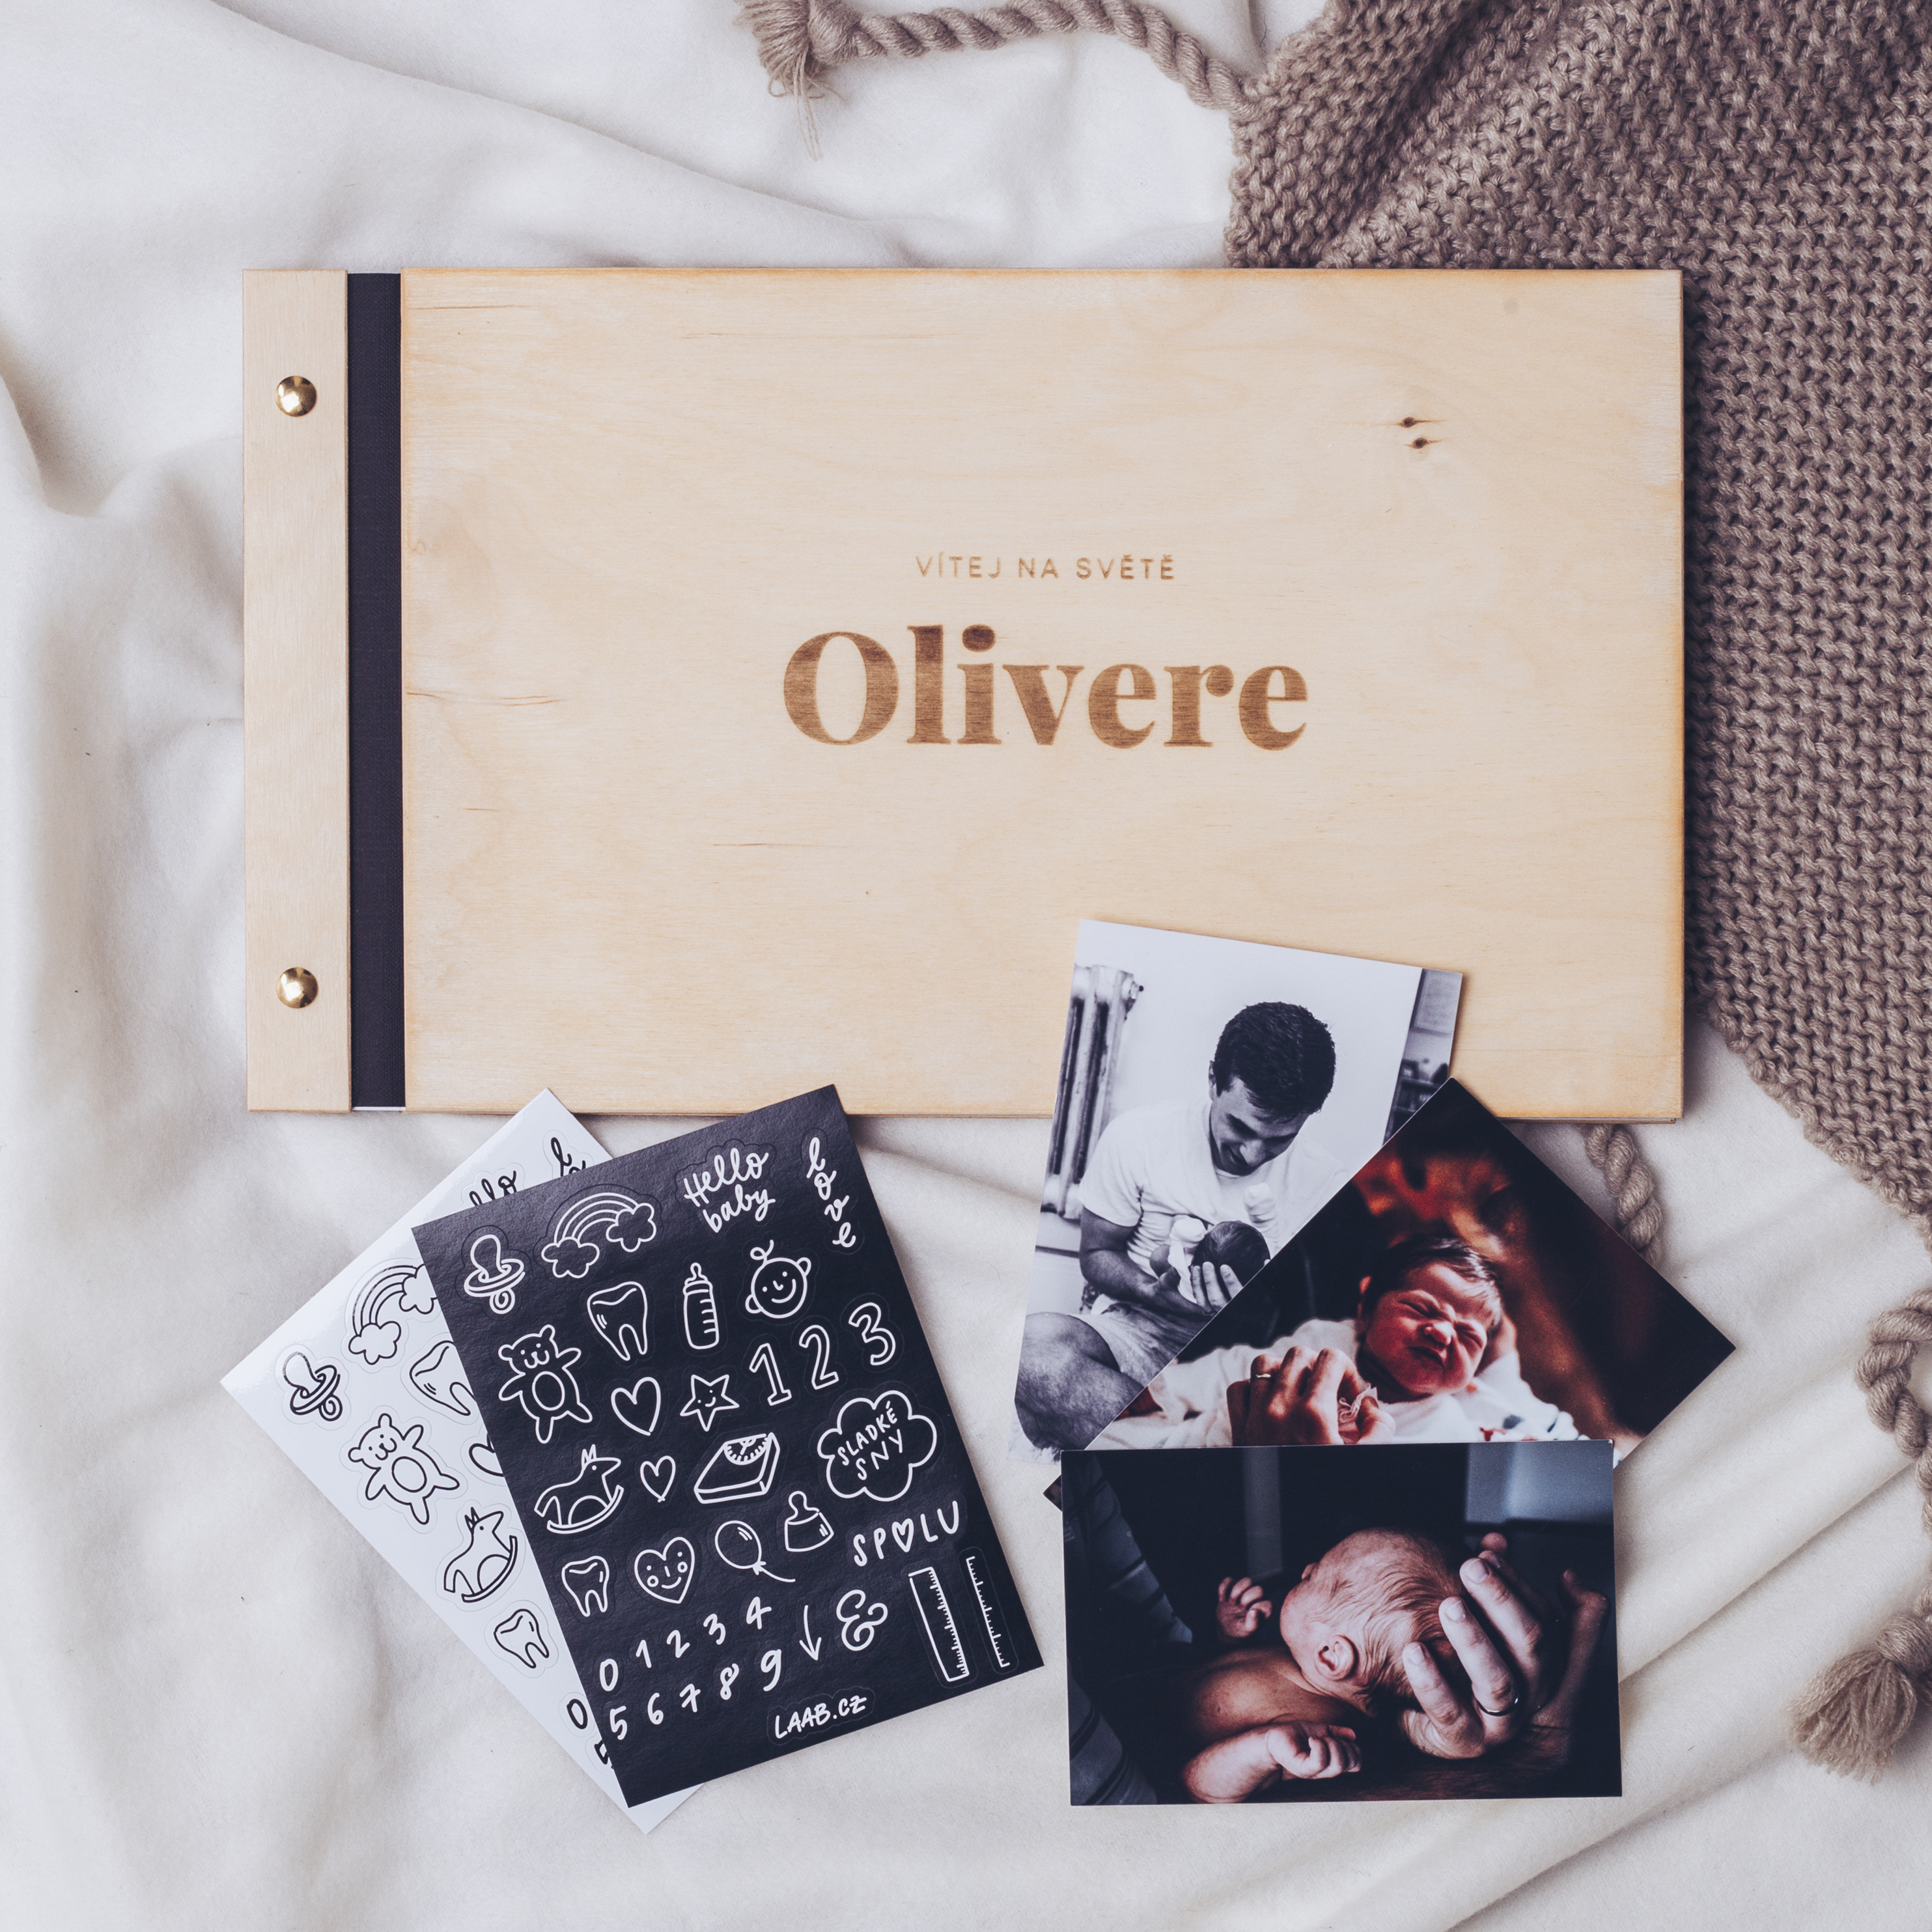 dřevěné fotoalbum Oliver: FORMÁT FOTOALBA čtverec, POČET LISTŮ 30, FORMÁT FOTOALBA čtverec, POČET LISTŮ 20 s prokladovými listy, BARVA LISTŮ bílá